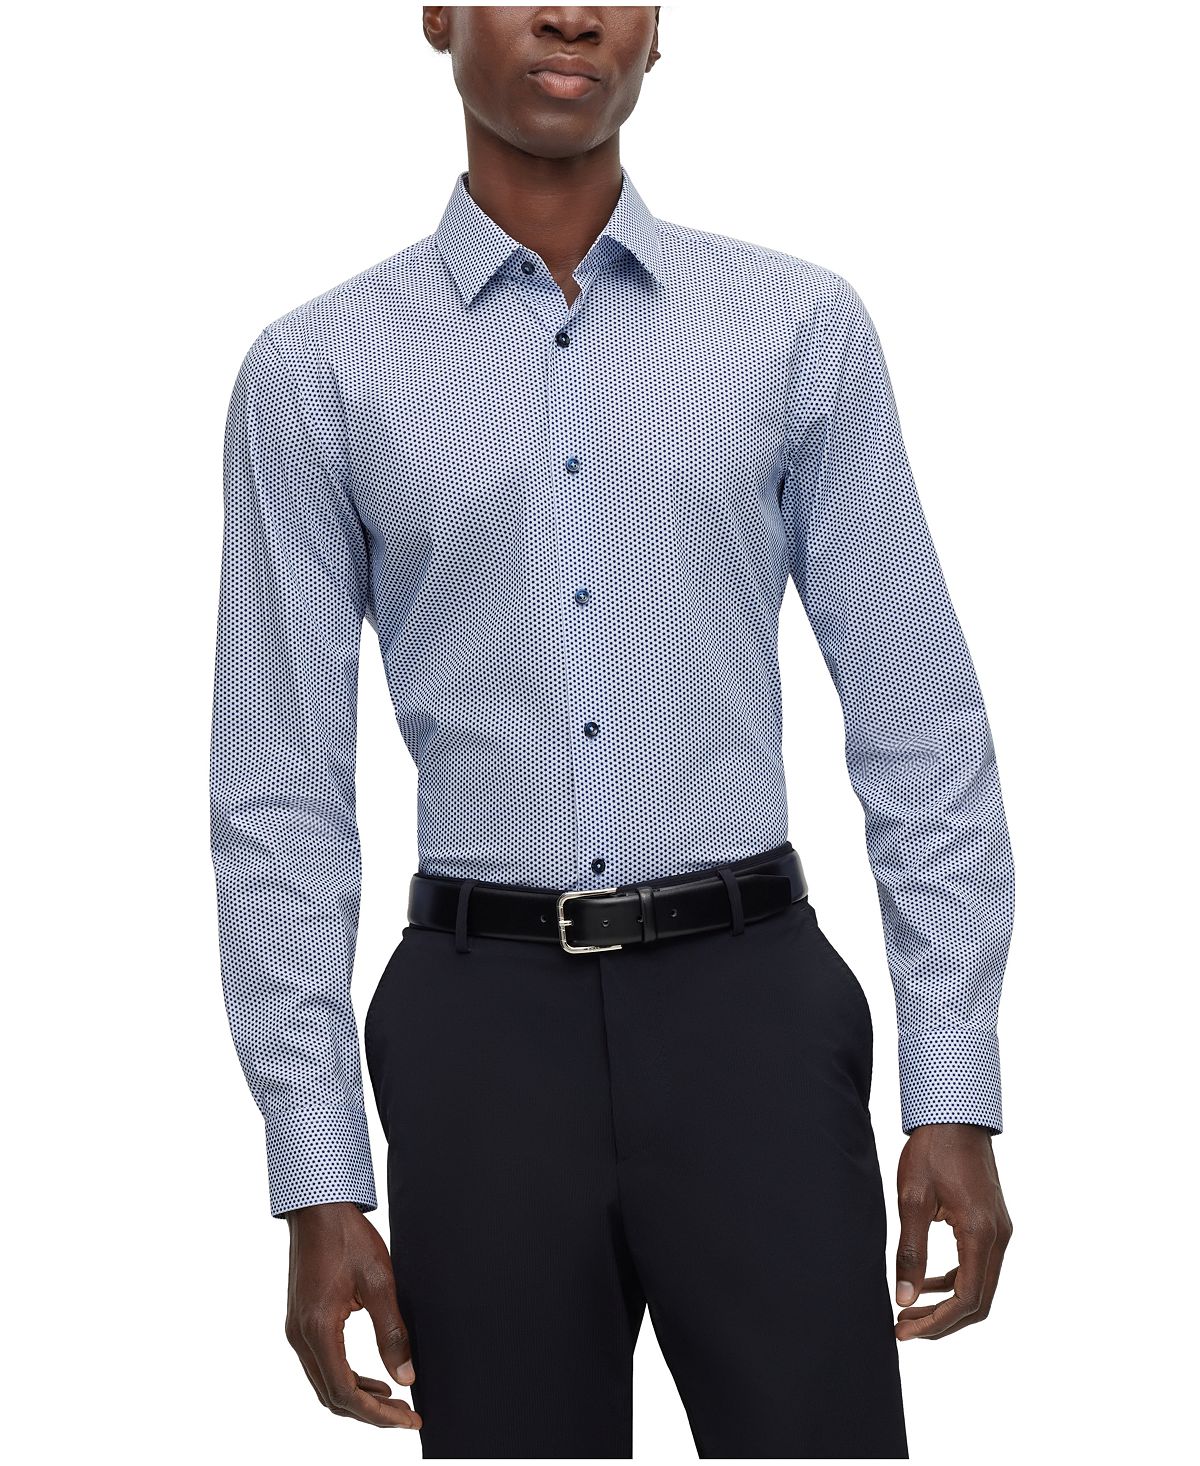 Мужская рубашка узкого кроя с принтом Hugo Boss мужской костюм жилет в полоску двубортная деловая куртка без рукавов повседневная облегающая универсальная мужская рубашка